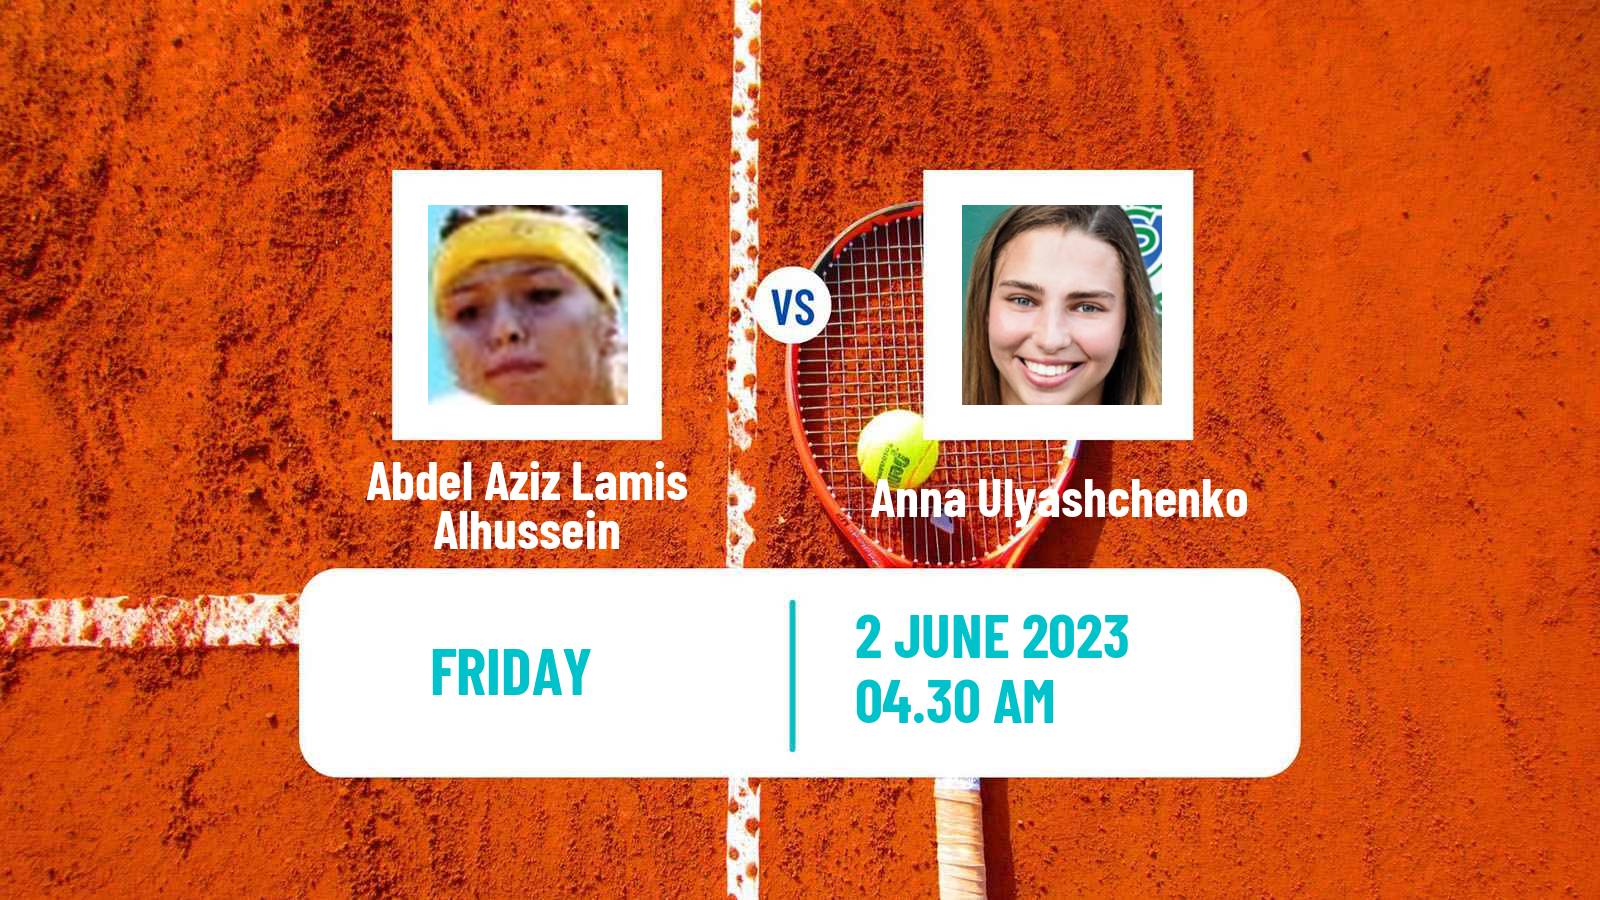 Tennis ITF W15 Monastir 17 Women Abdel Aziz Lamis Alhussein - Anna Ulyashchenko